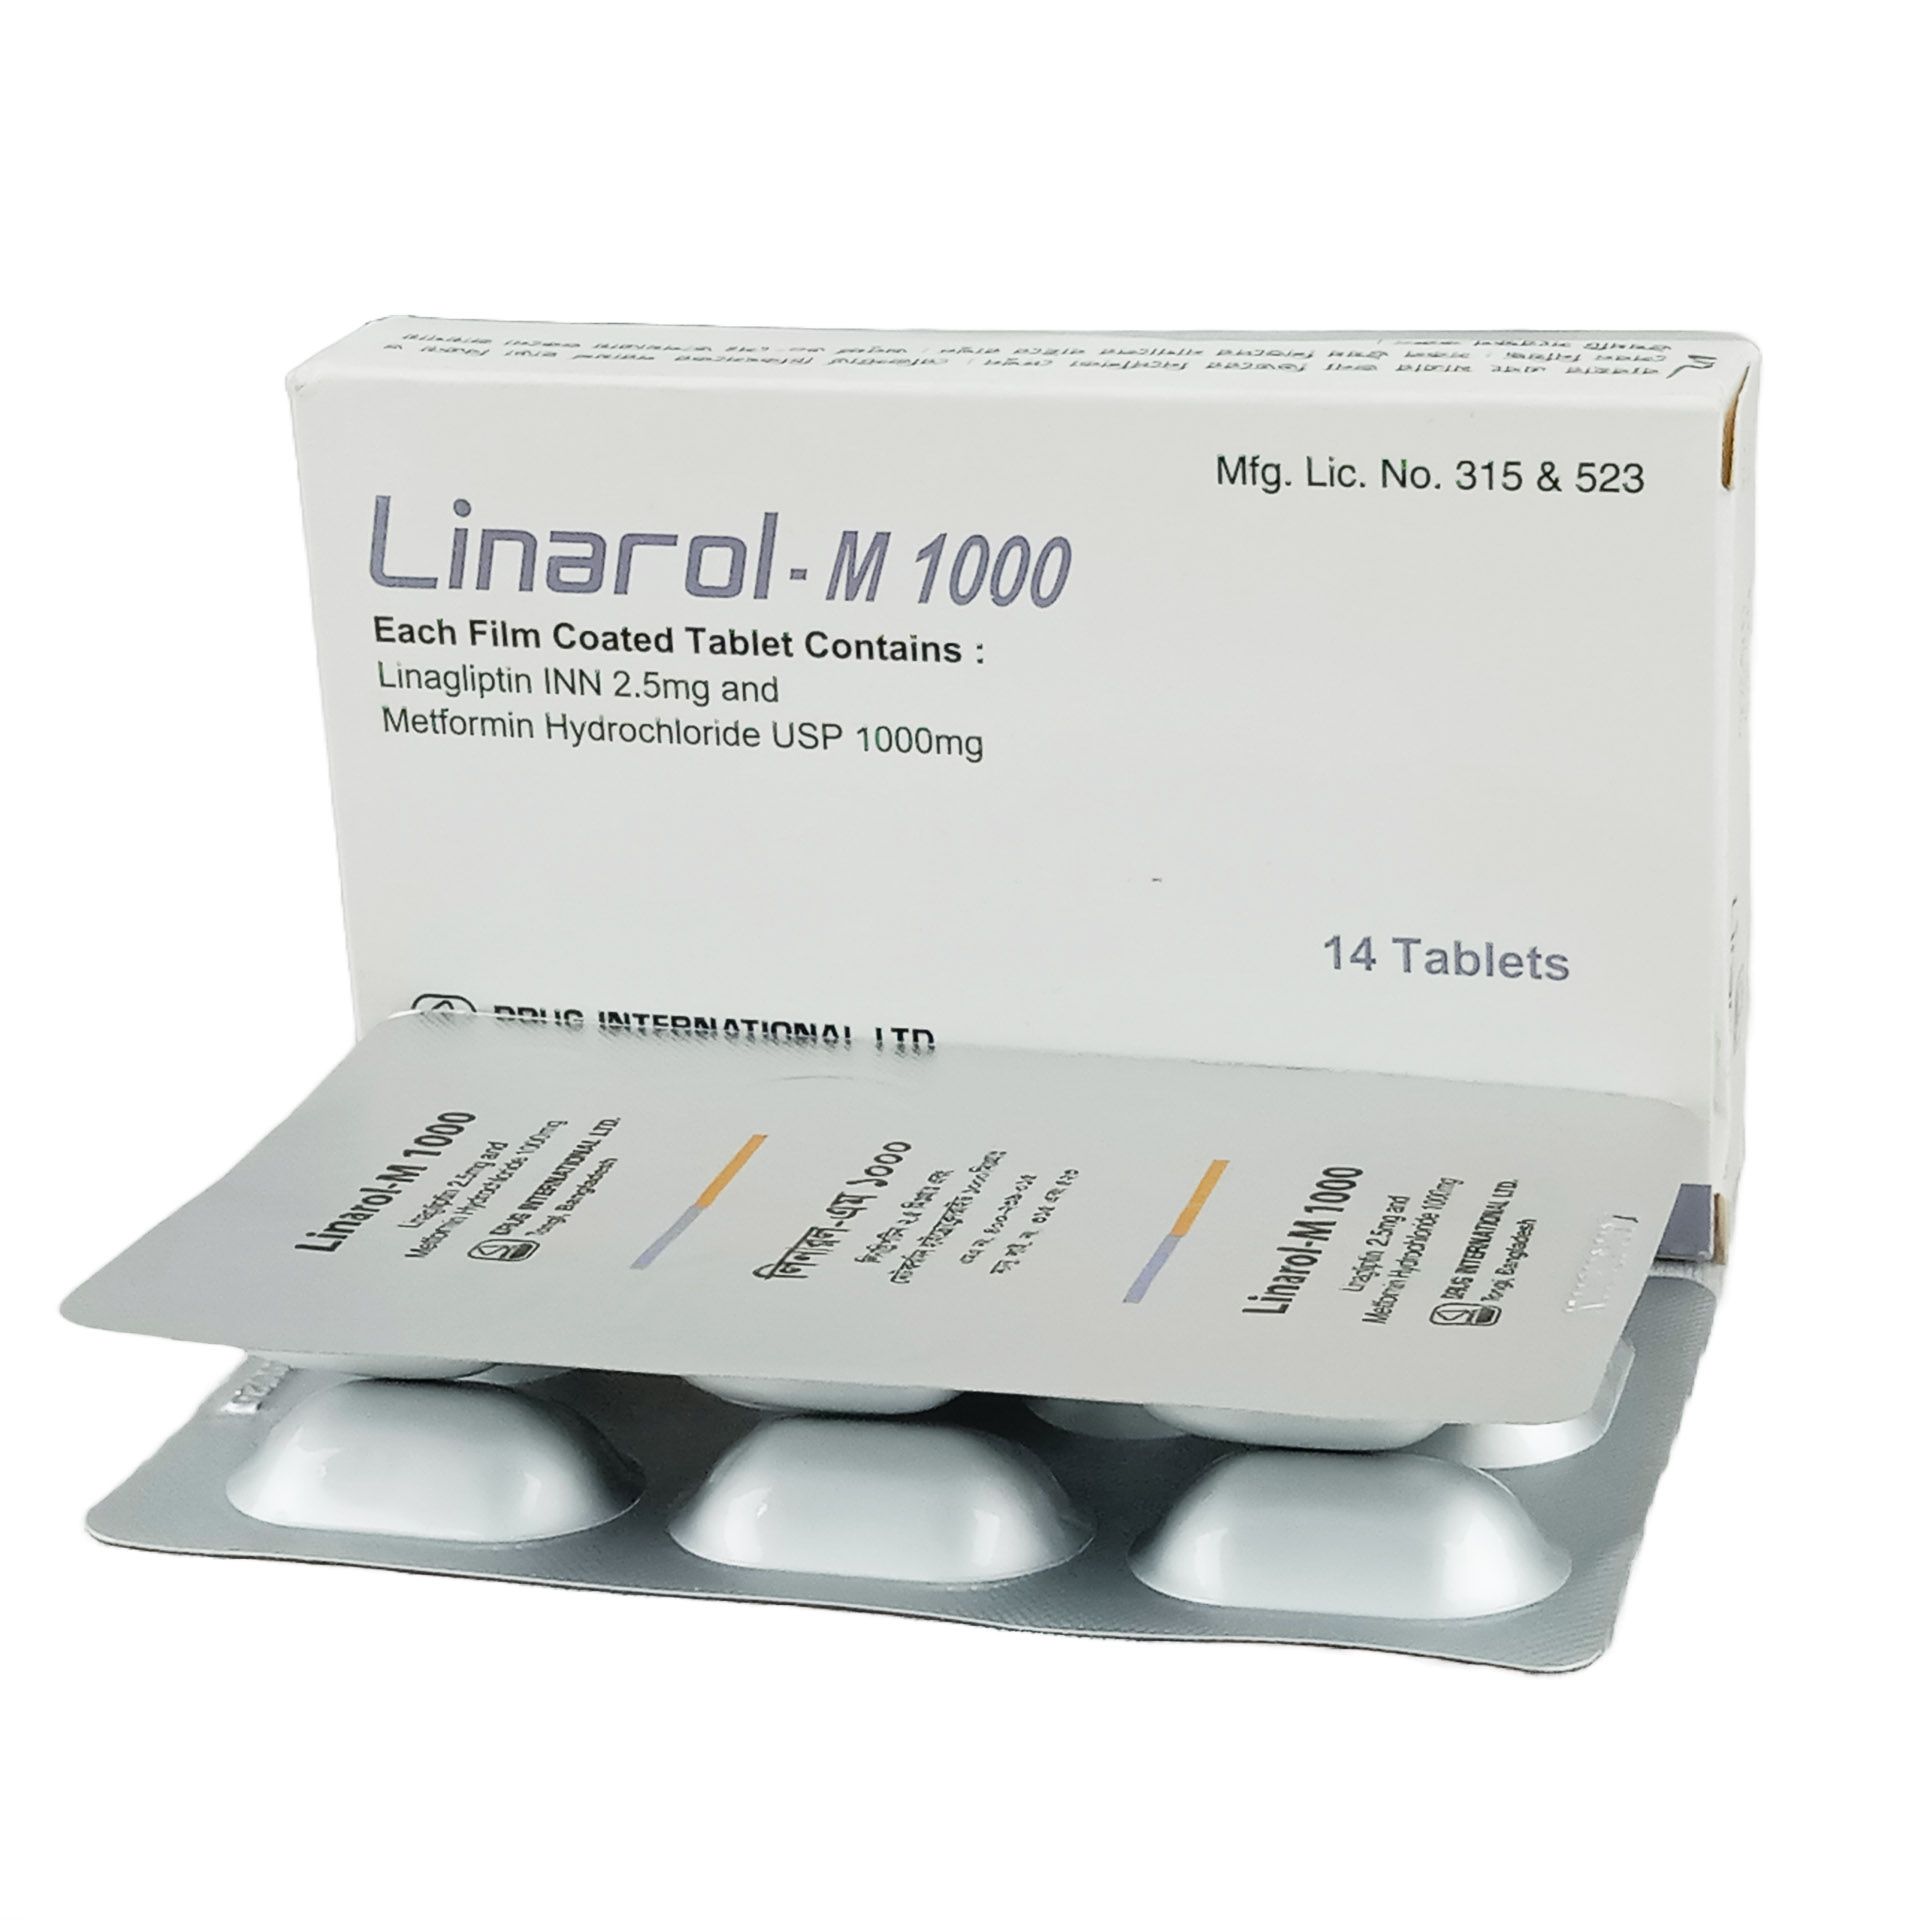 Linarol M 1000 2.5mg+1000mg Tablet